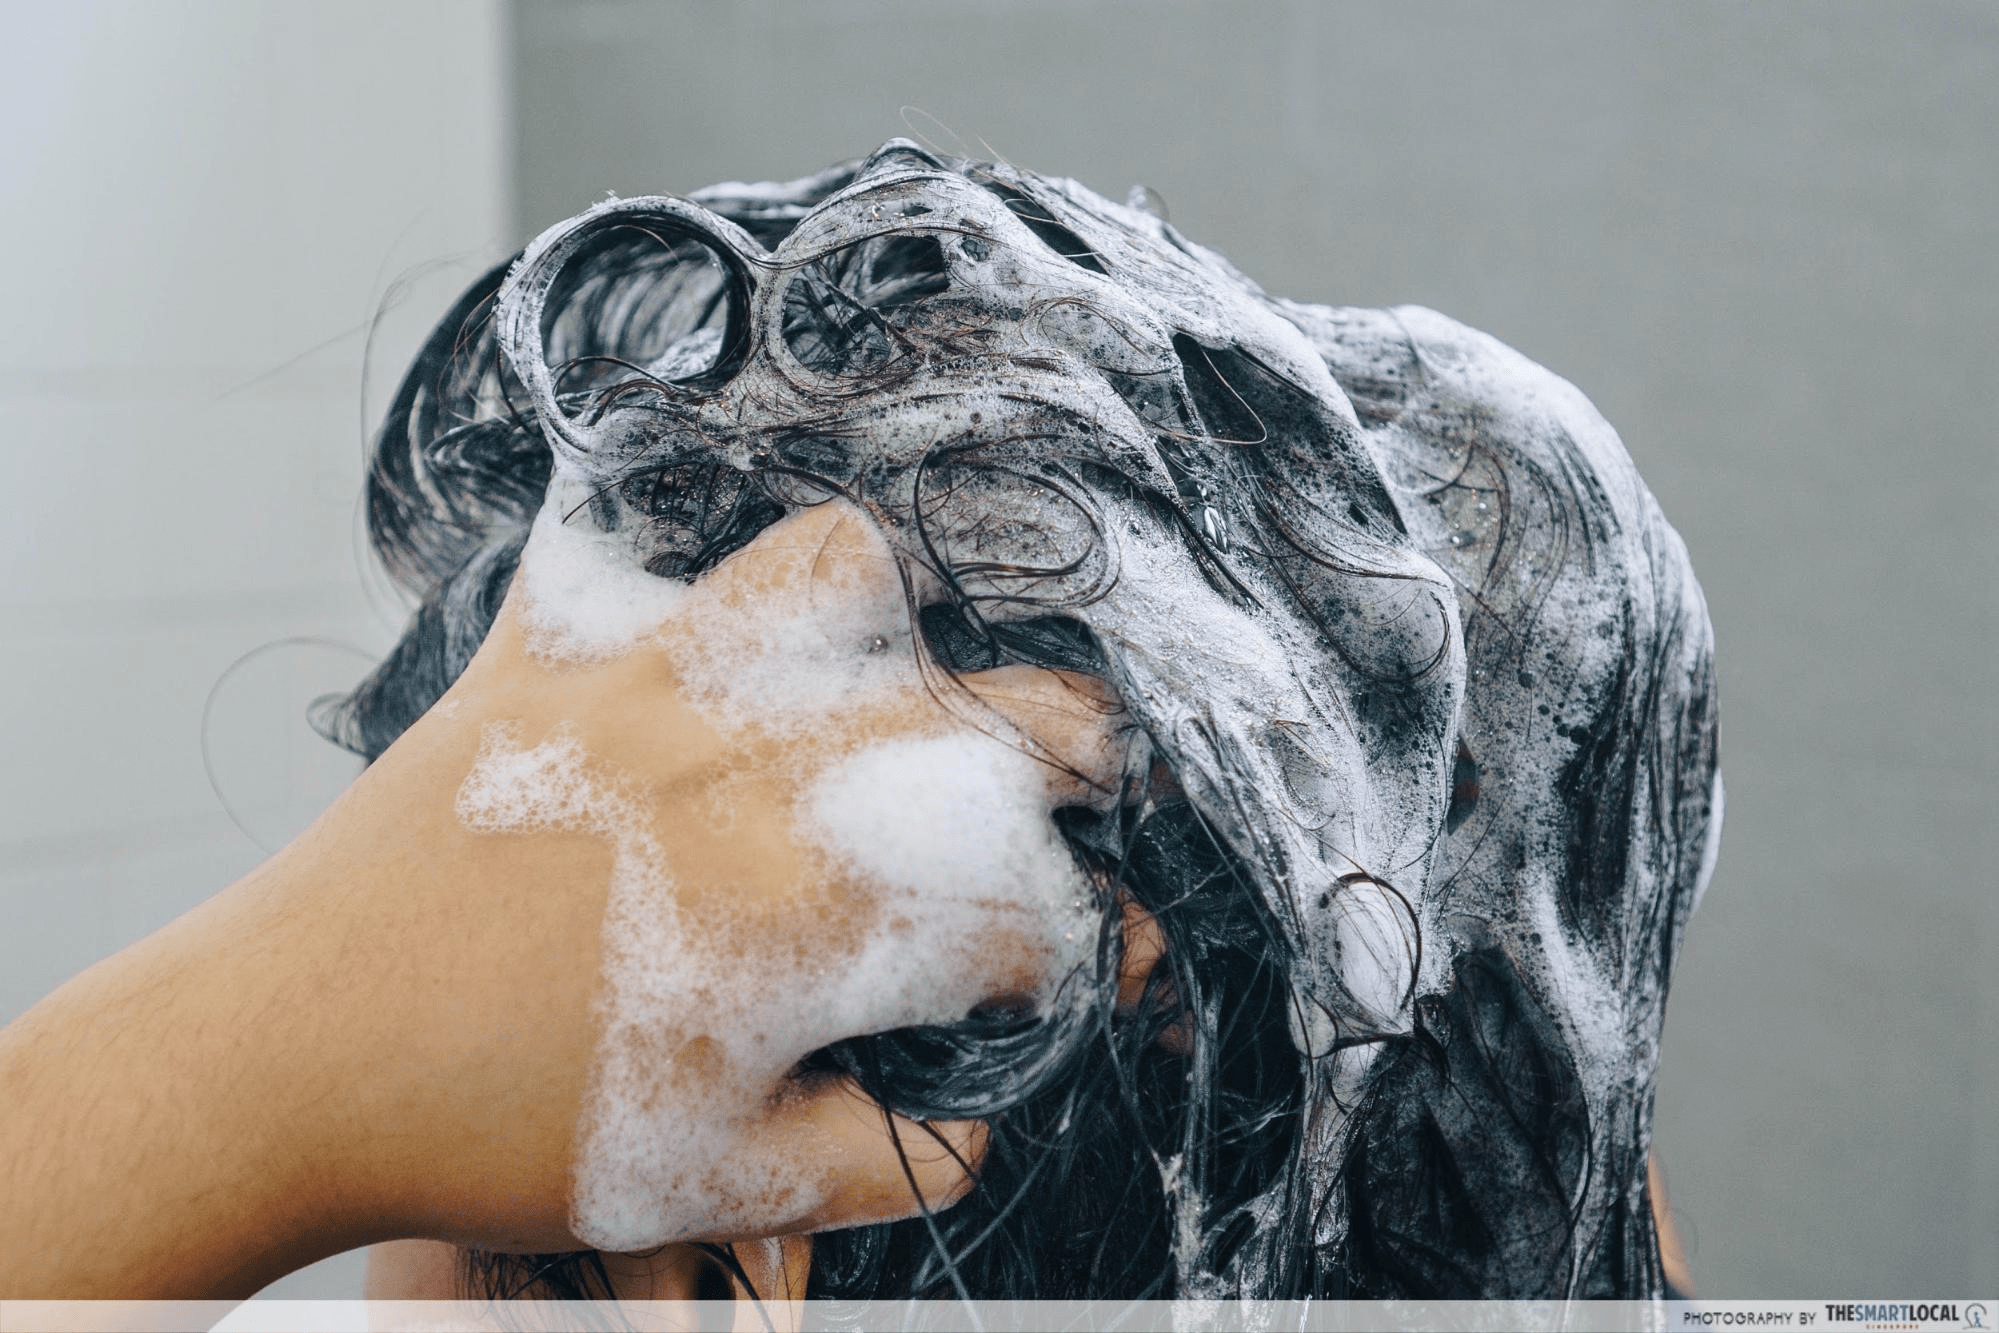 hair loss treatment singapore - excessive hair washing